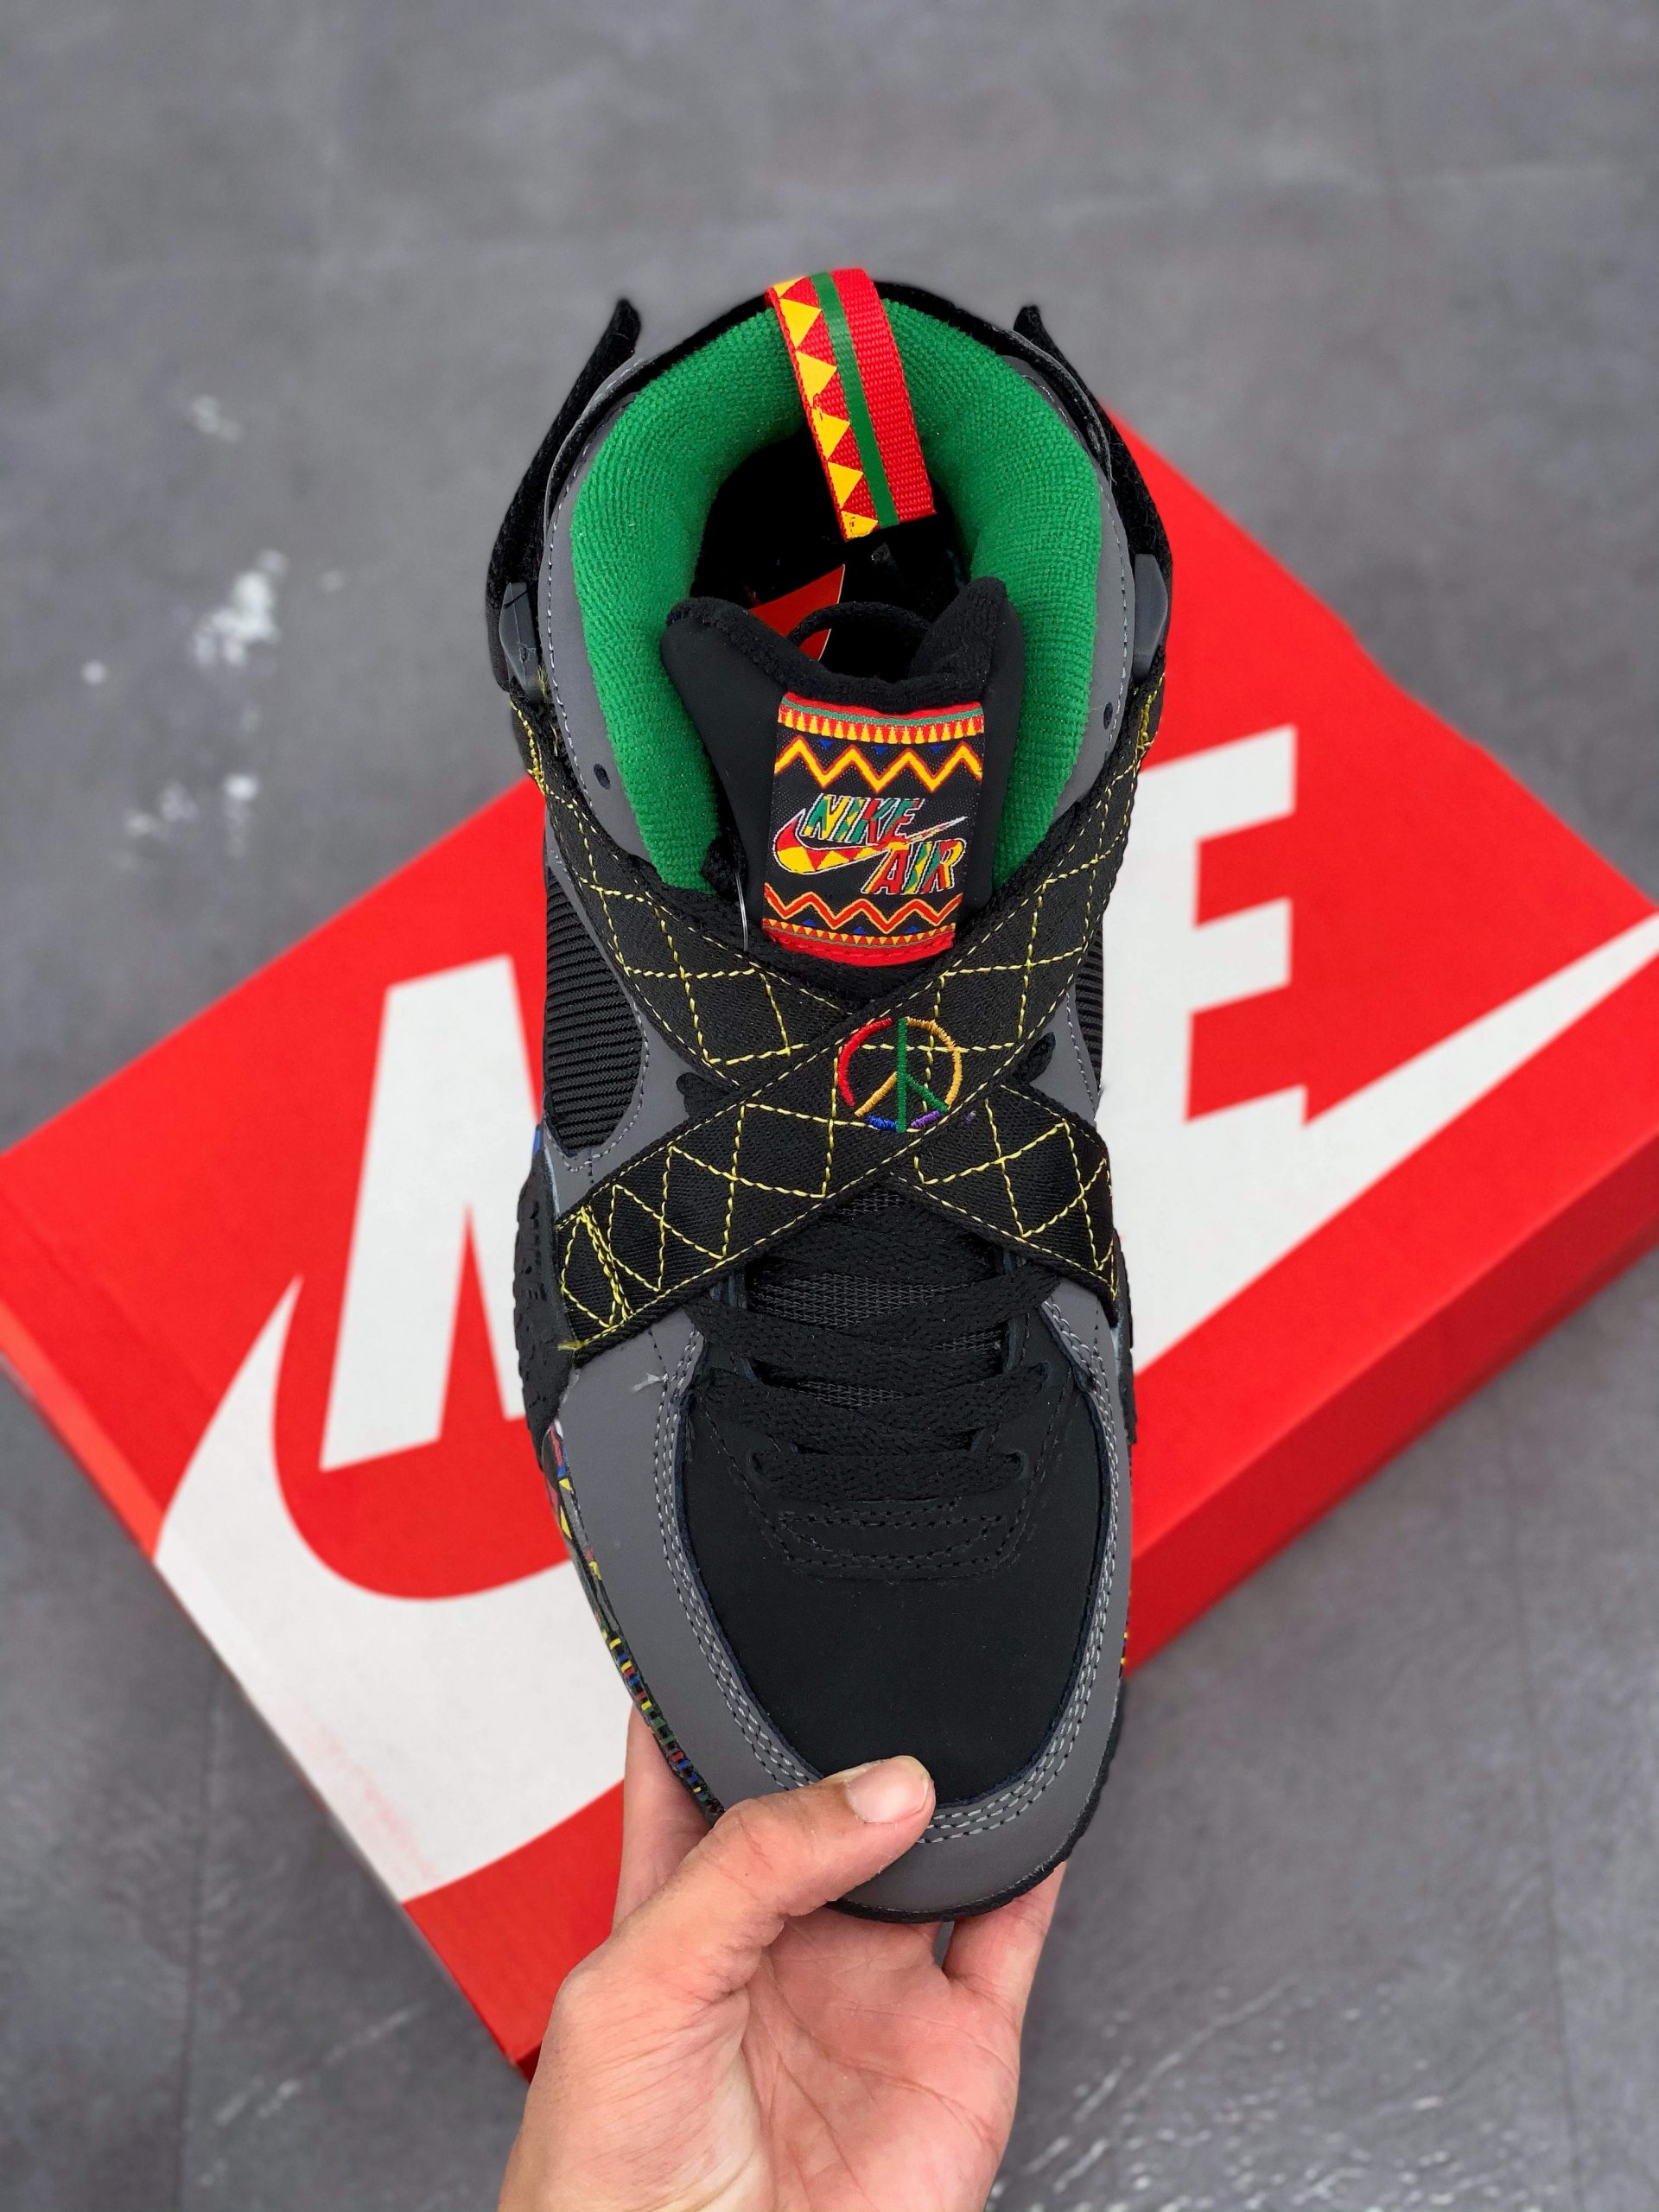 Buy the Nike Air Raid Urban Jungle Sneakers Men's Size 11